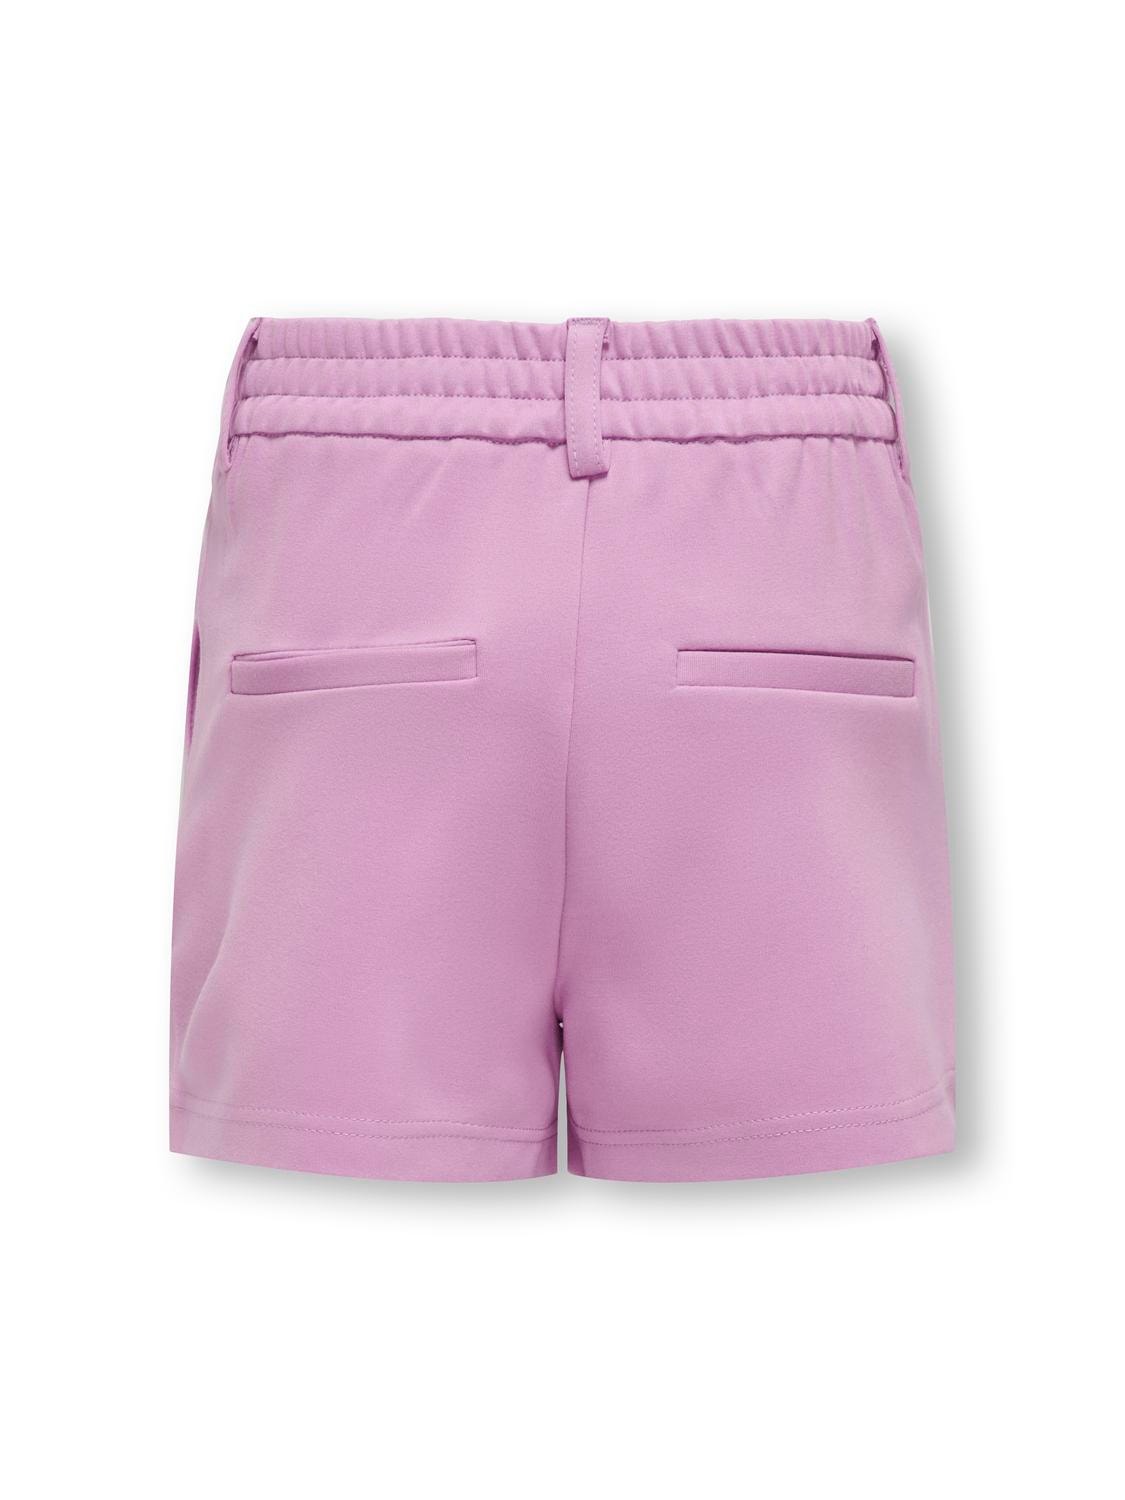 ONLY Poptrash Shorts -Violet Tulle - 15205049